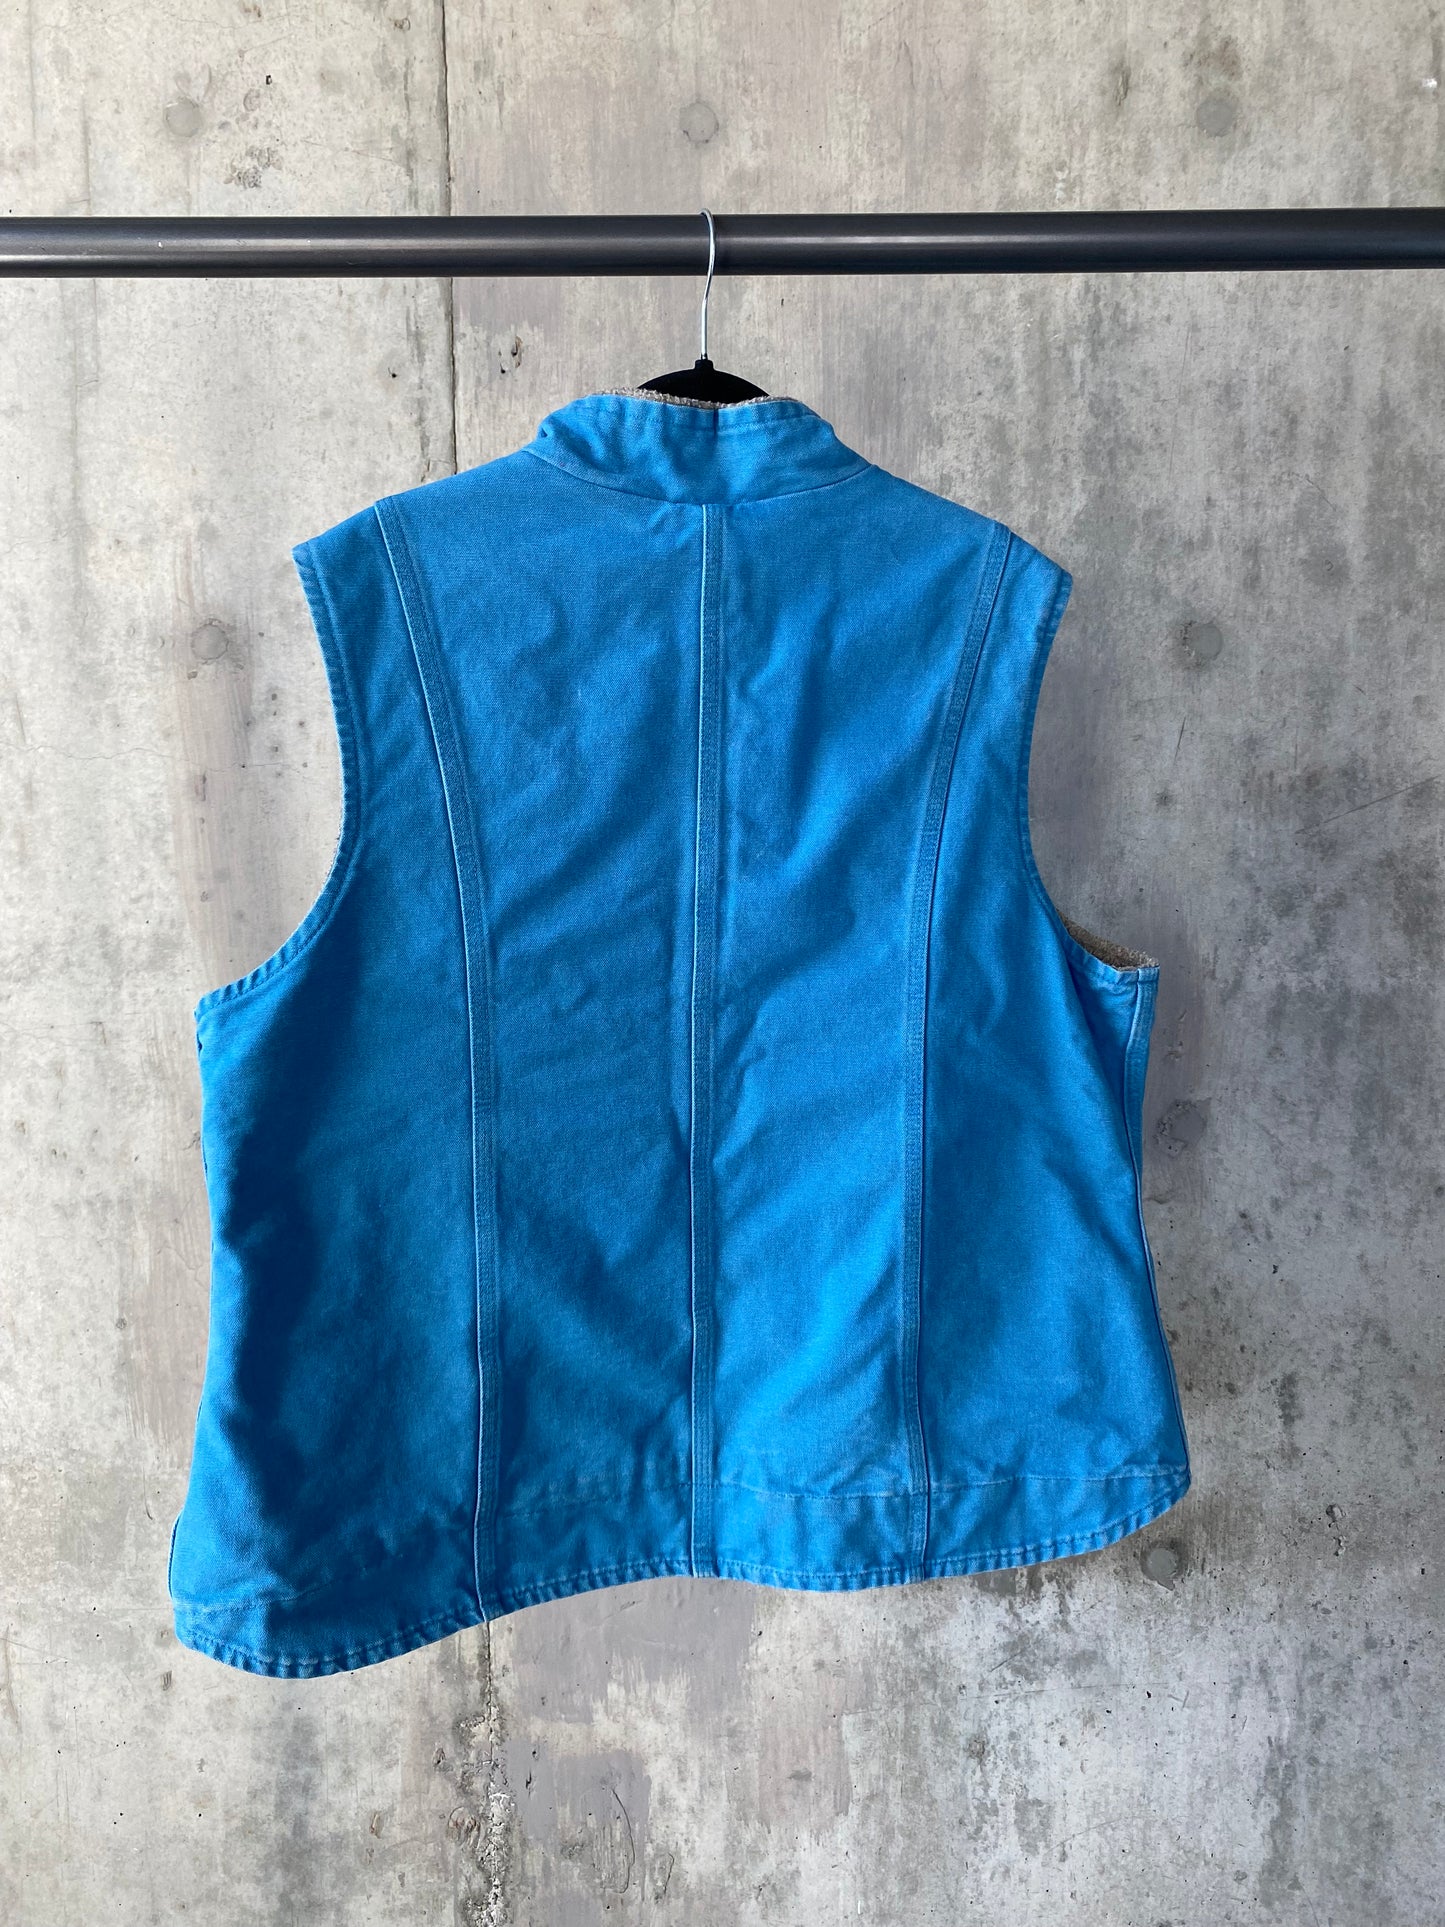 Thrifted Carhartt Vest